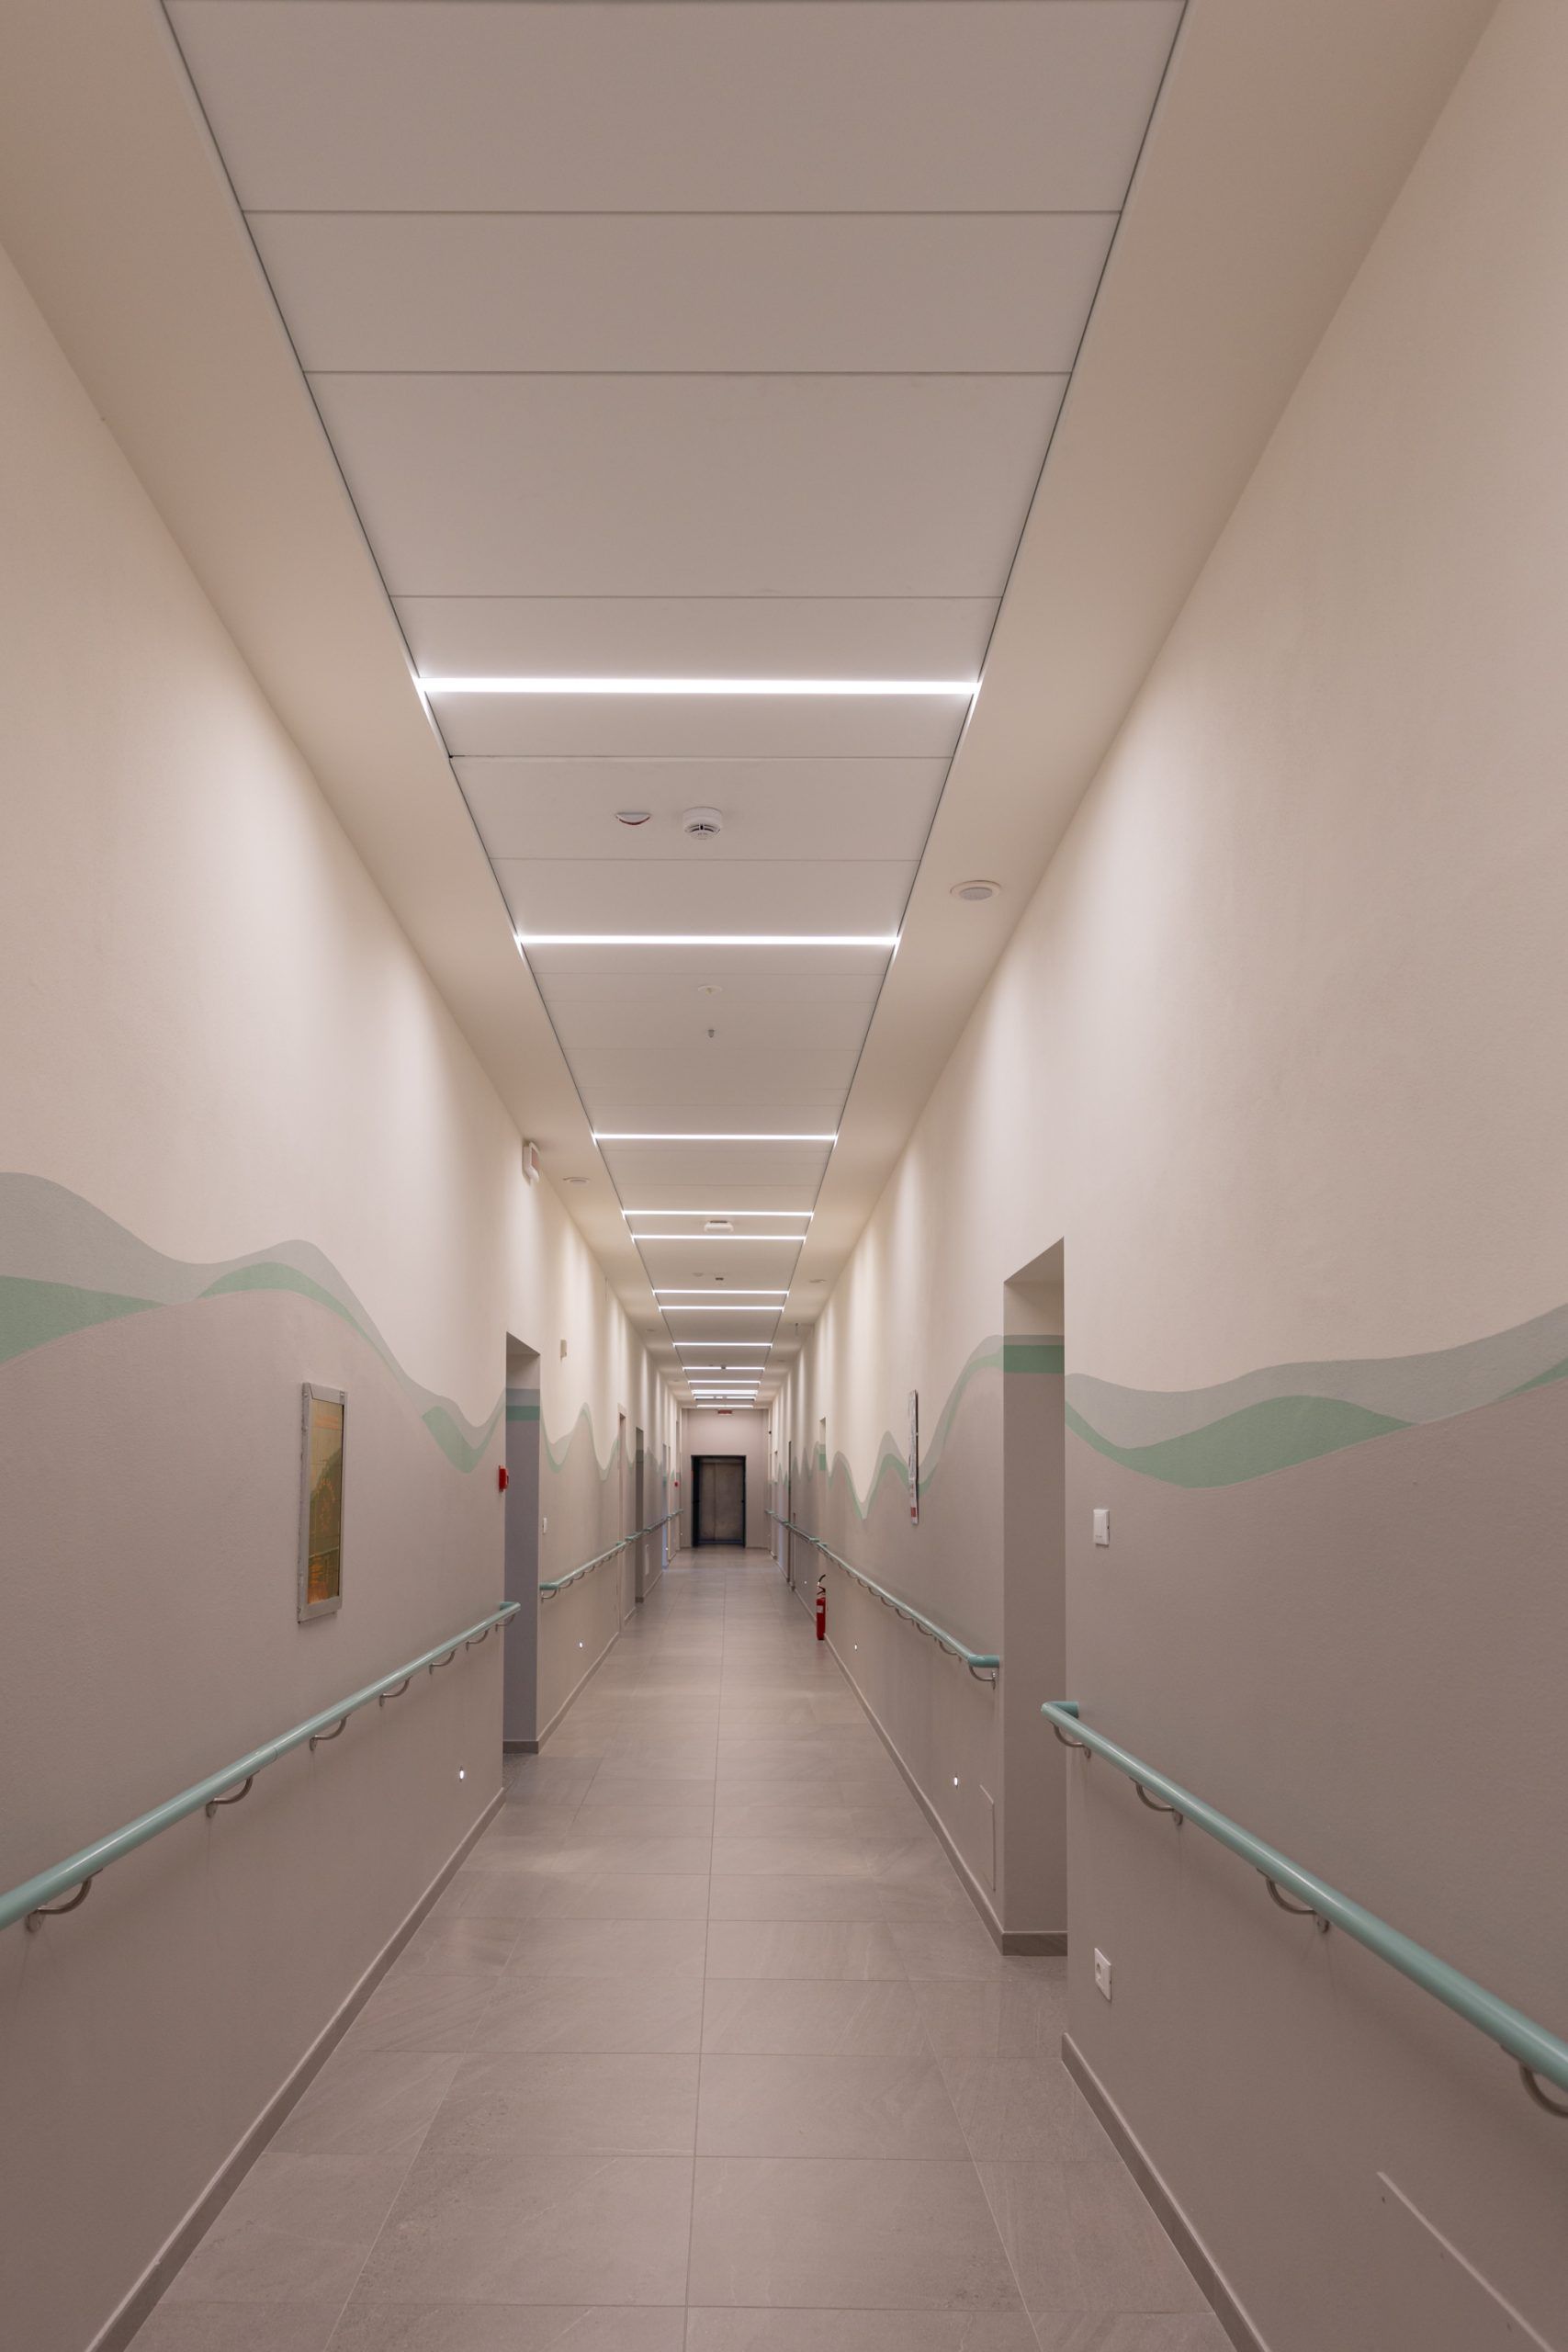 immagine del corridoio illuminato della RSA di desenzano